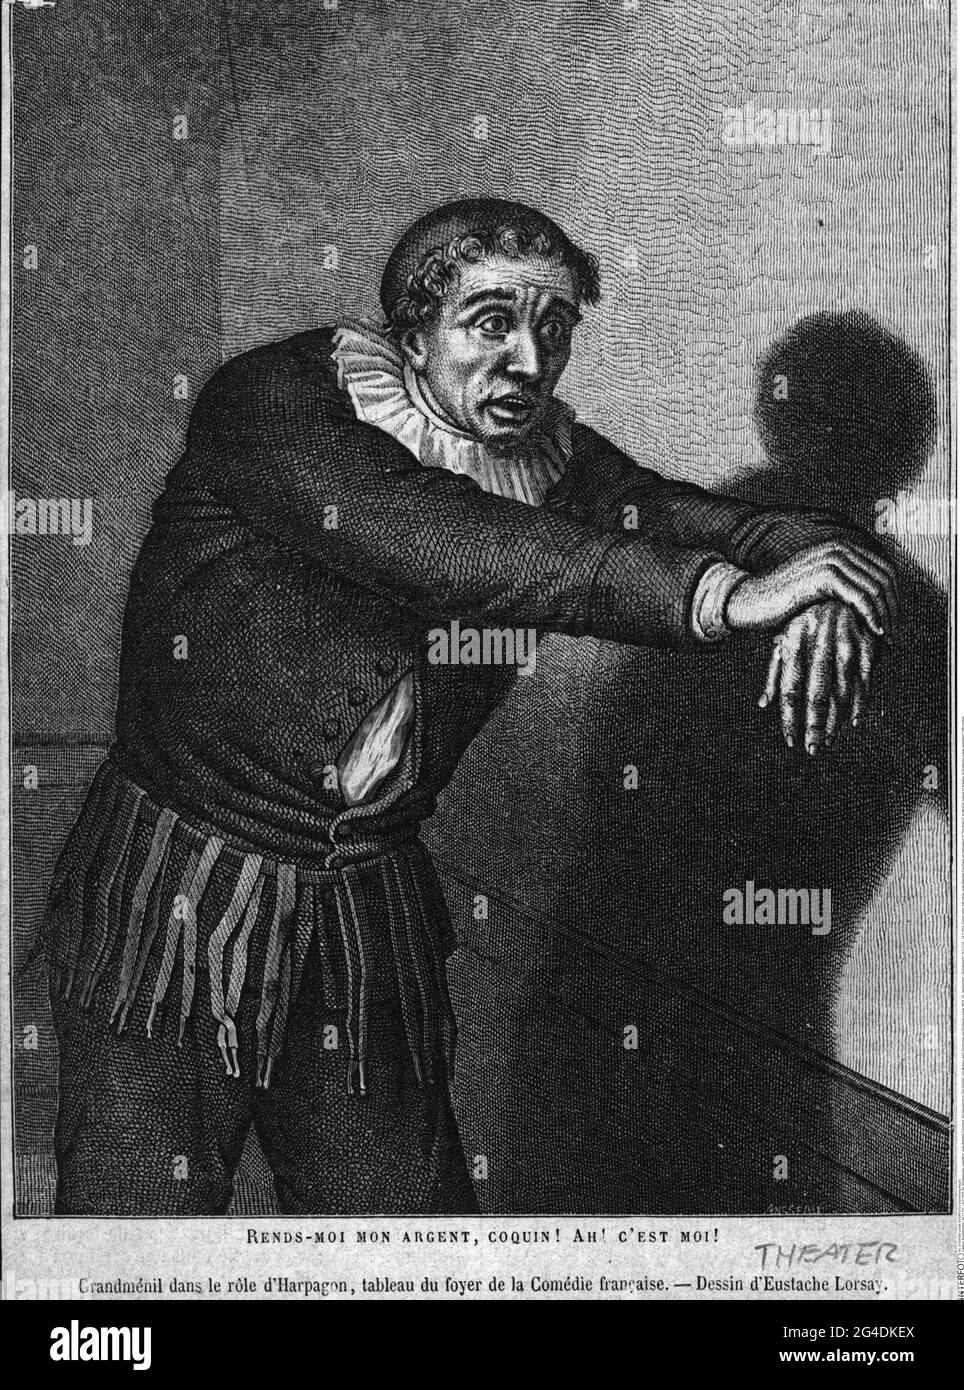 Grandmesnil, 19.3.1737 - 24.5.1816, französischer Schauspieler, bith Name: Jean-Baptiste Fauchard, ARTIST'S DAS URHEBERRECHT MUSS NICHT FREIGEGEBEN WERDEN Stockfoto